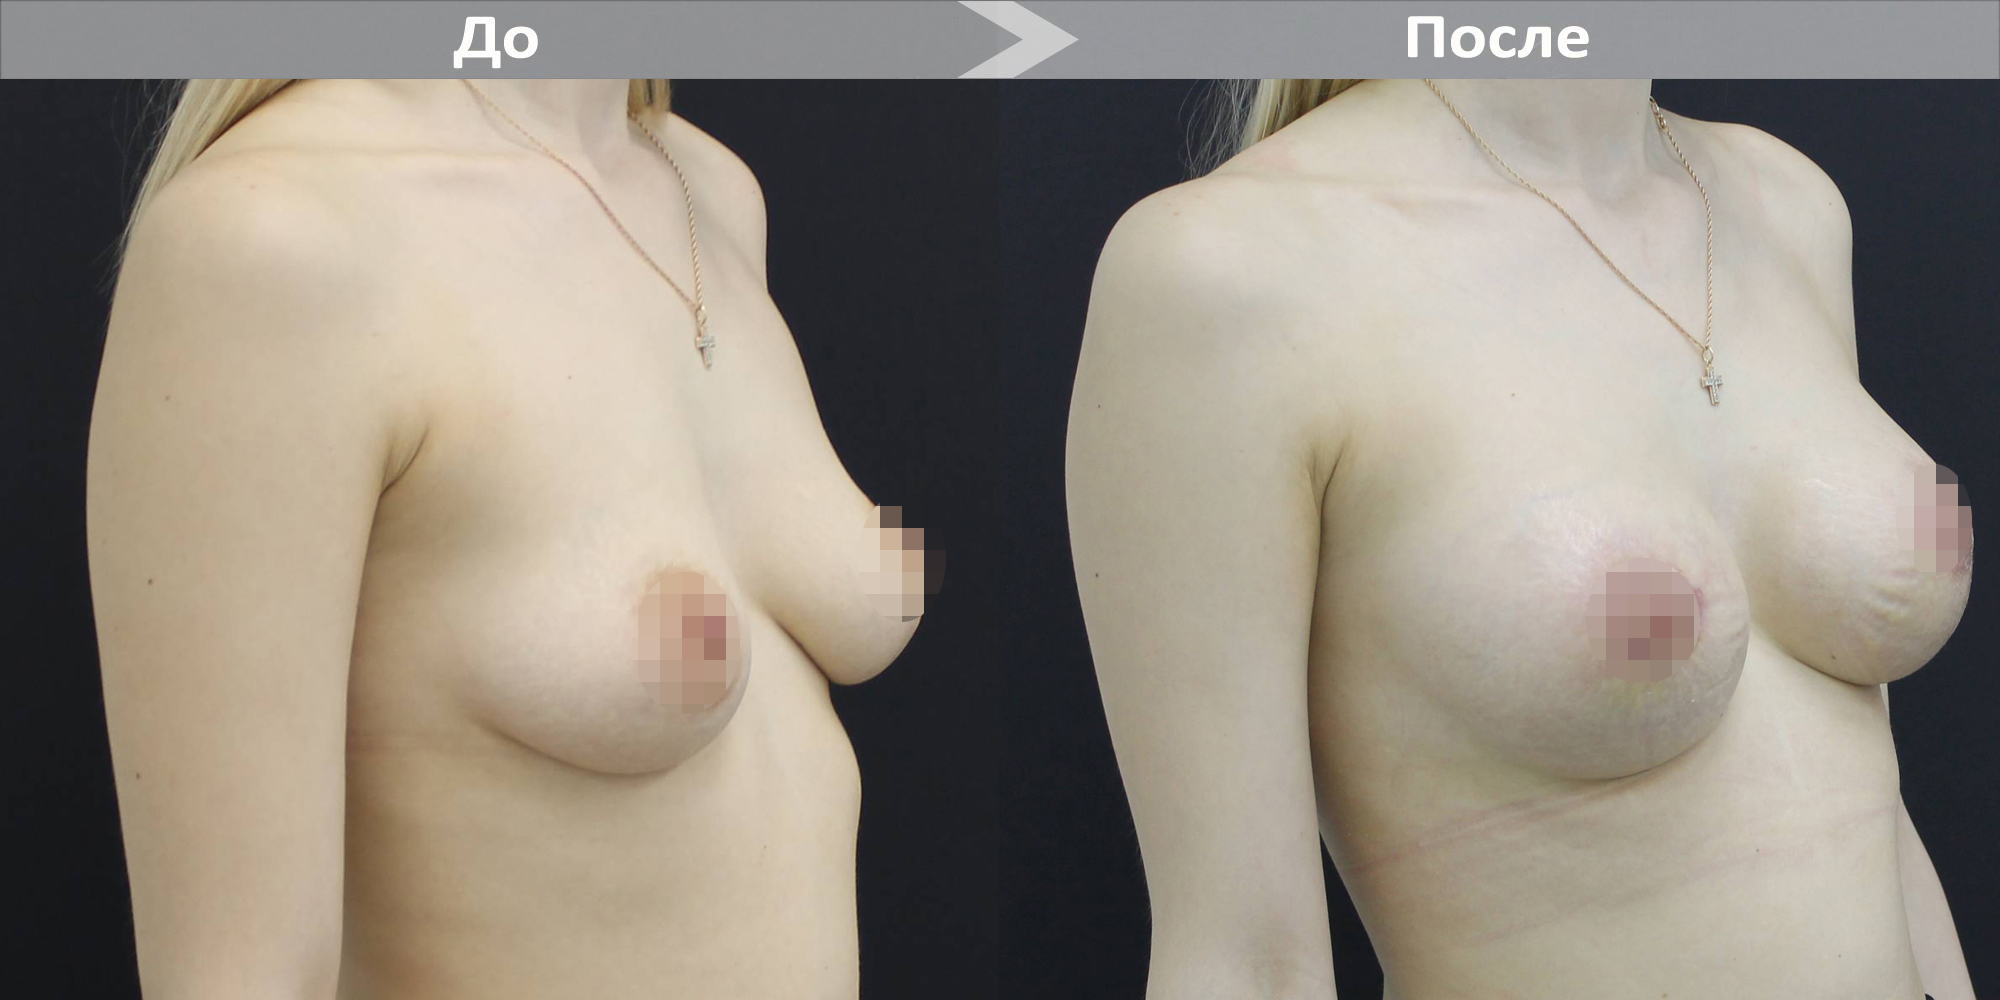 удаление и восстановление груди в одну операцию фото 79